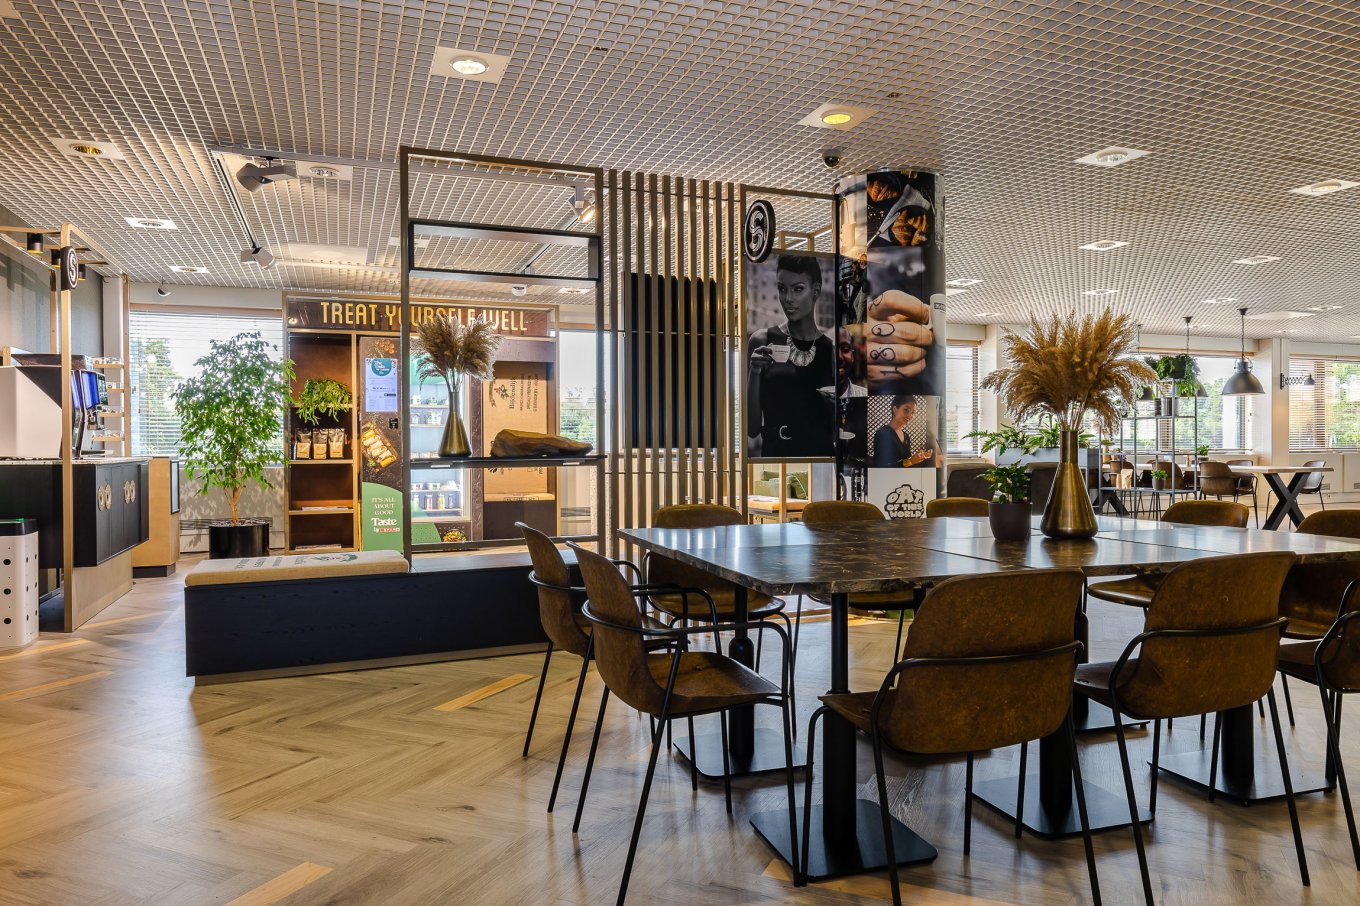 wineo Referenzobjekt | HR Maas PURLINE Bioboden im Pausenraum mit moderner Einrichtung Fußboden mit Fischgrätmuster